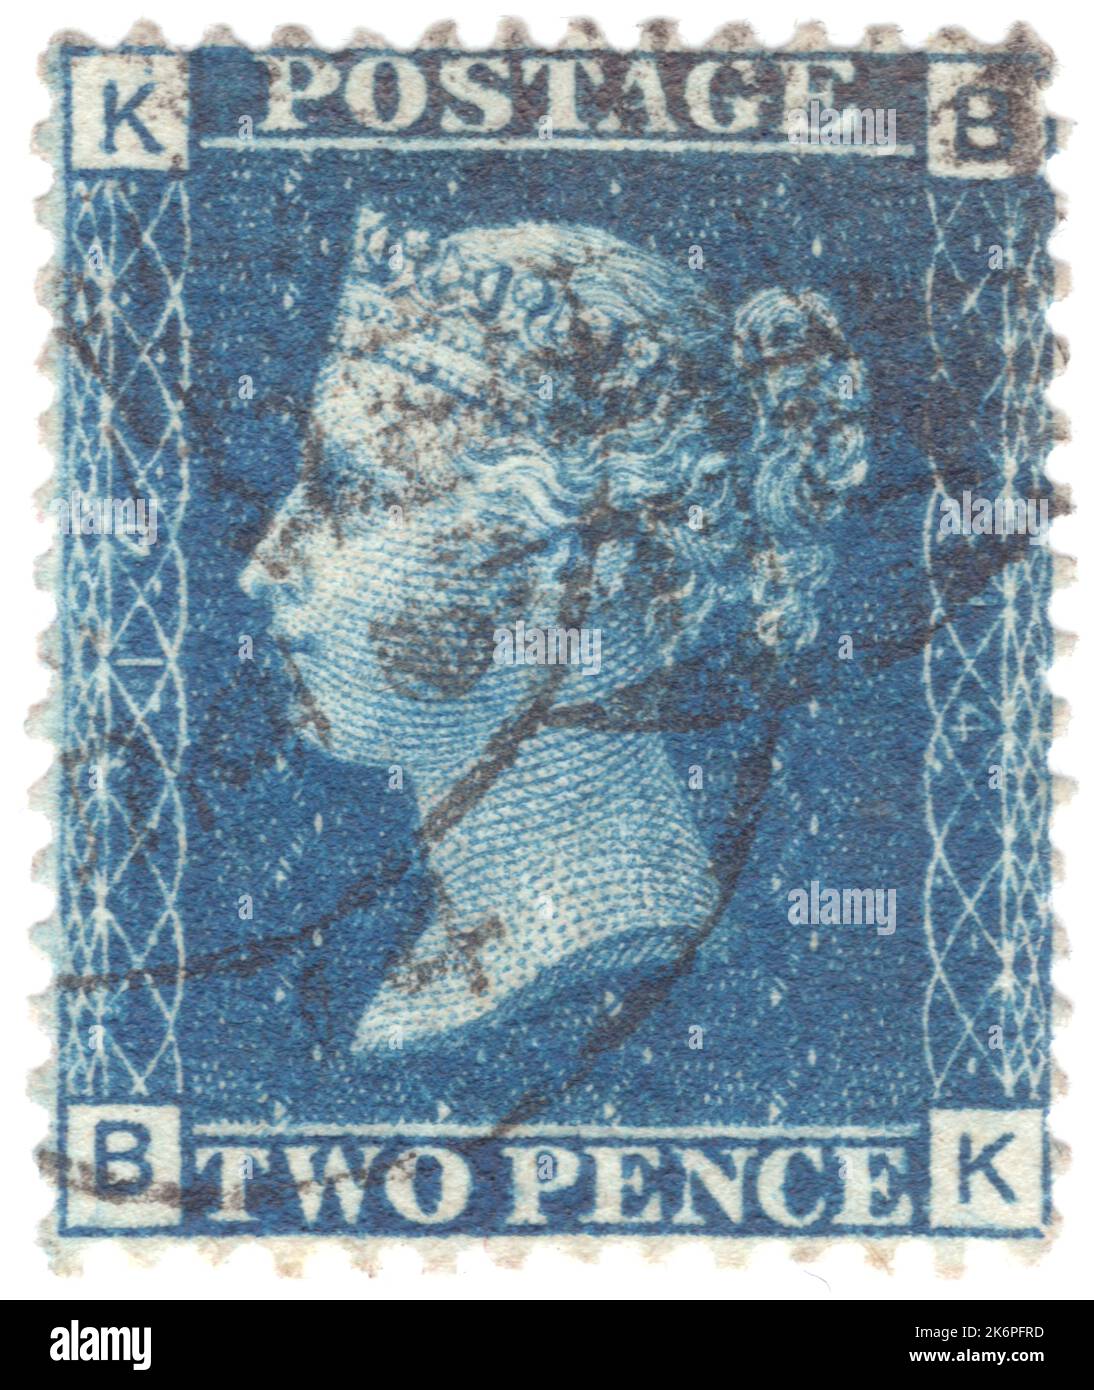 REINO UNIDO — HACIA 1858: Un antiguo británico victoriano utilizó dos sellos de franqueo azul de penique que mostraban el retrato de la reina Victoria Foto de stock